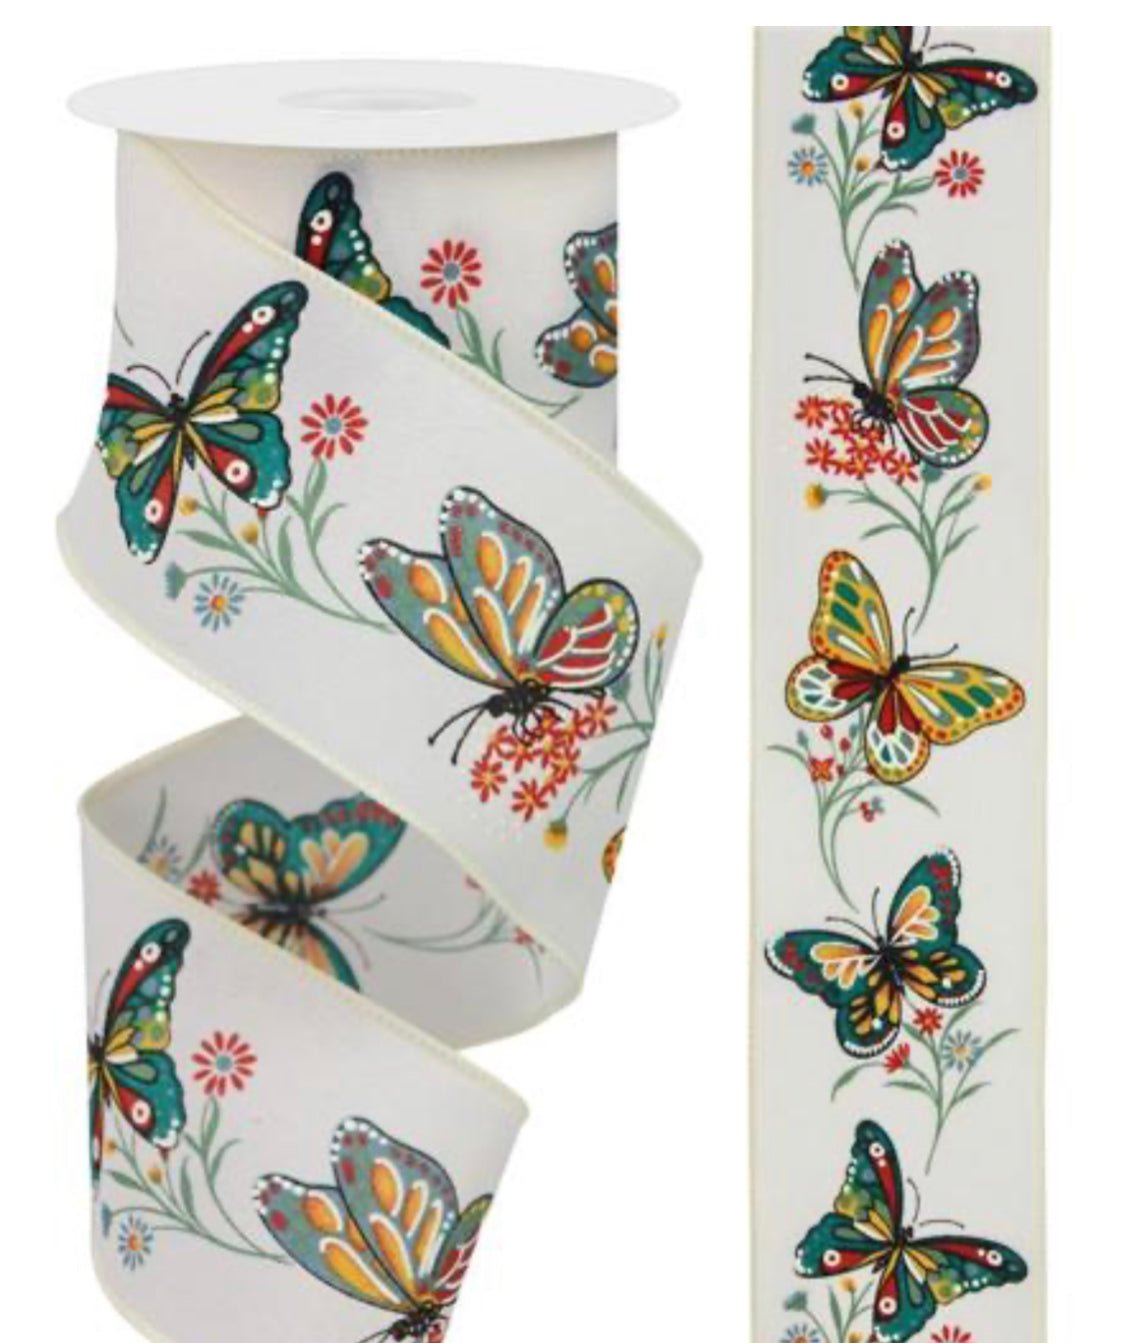 Butterfly ribbon 2.5" - Greenery Marketrge1404c2